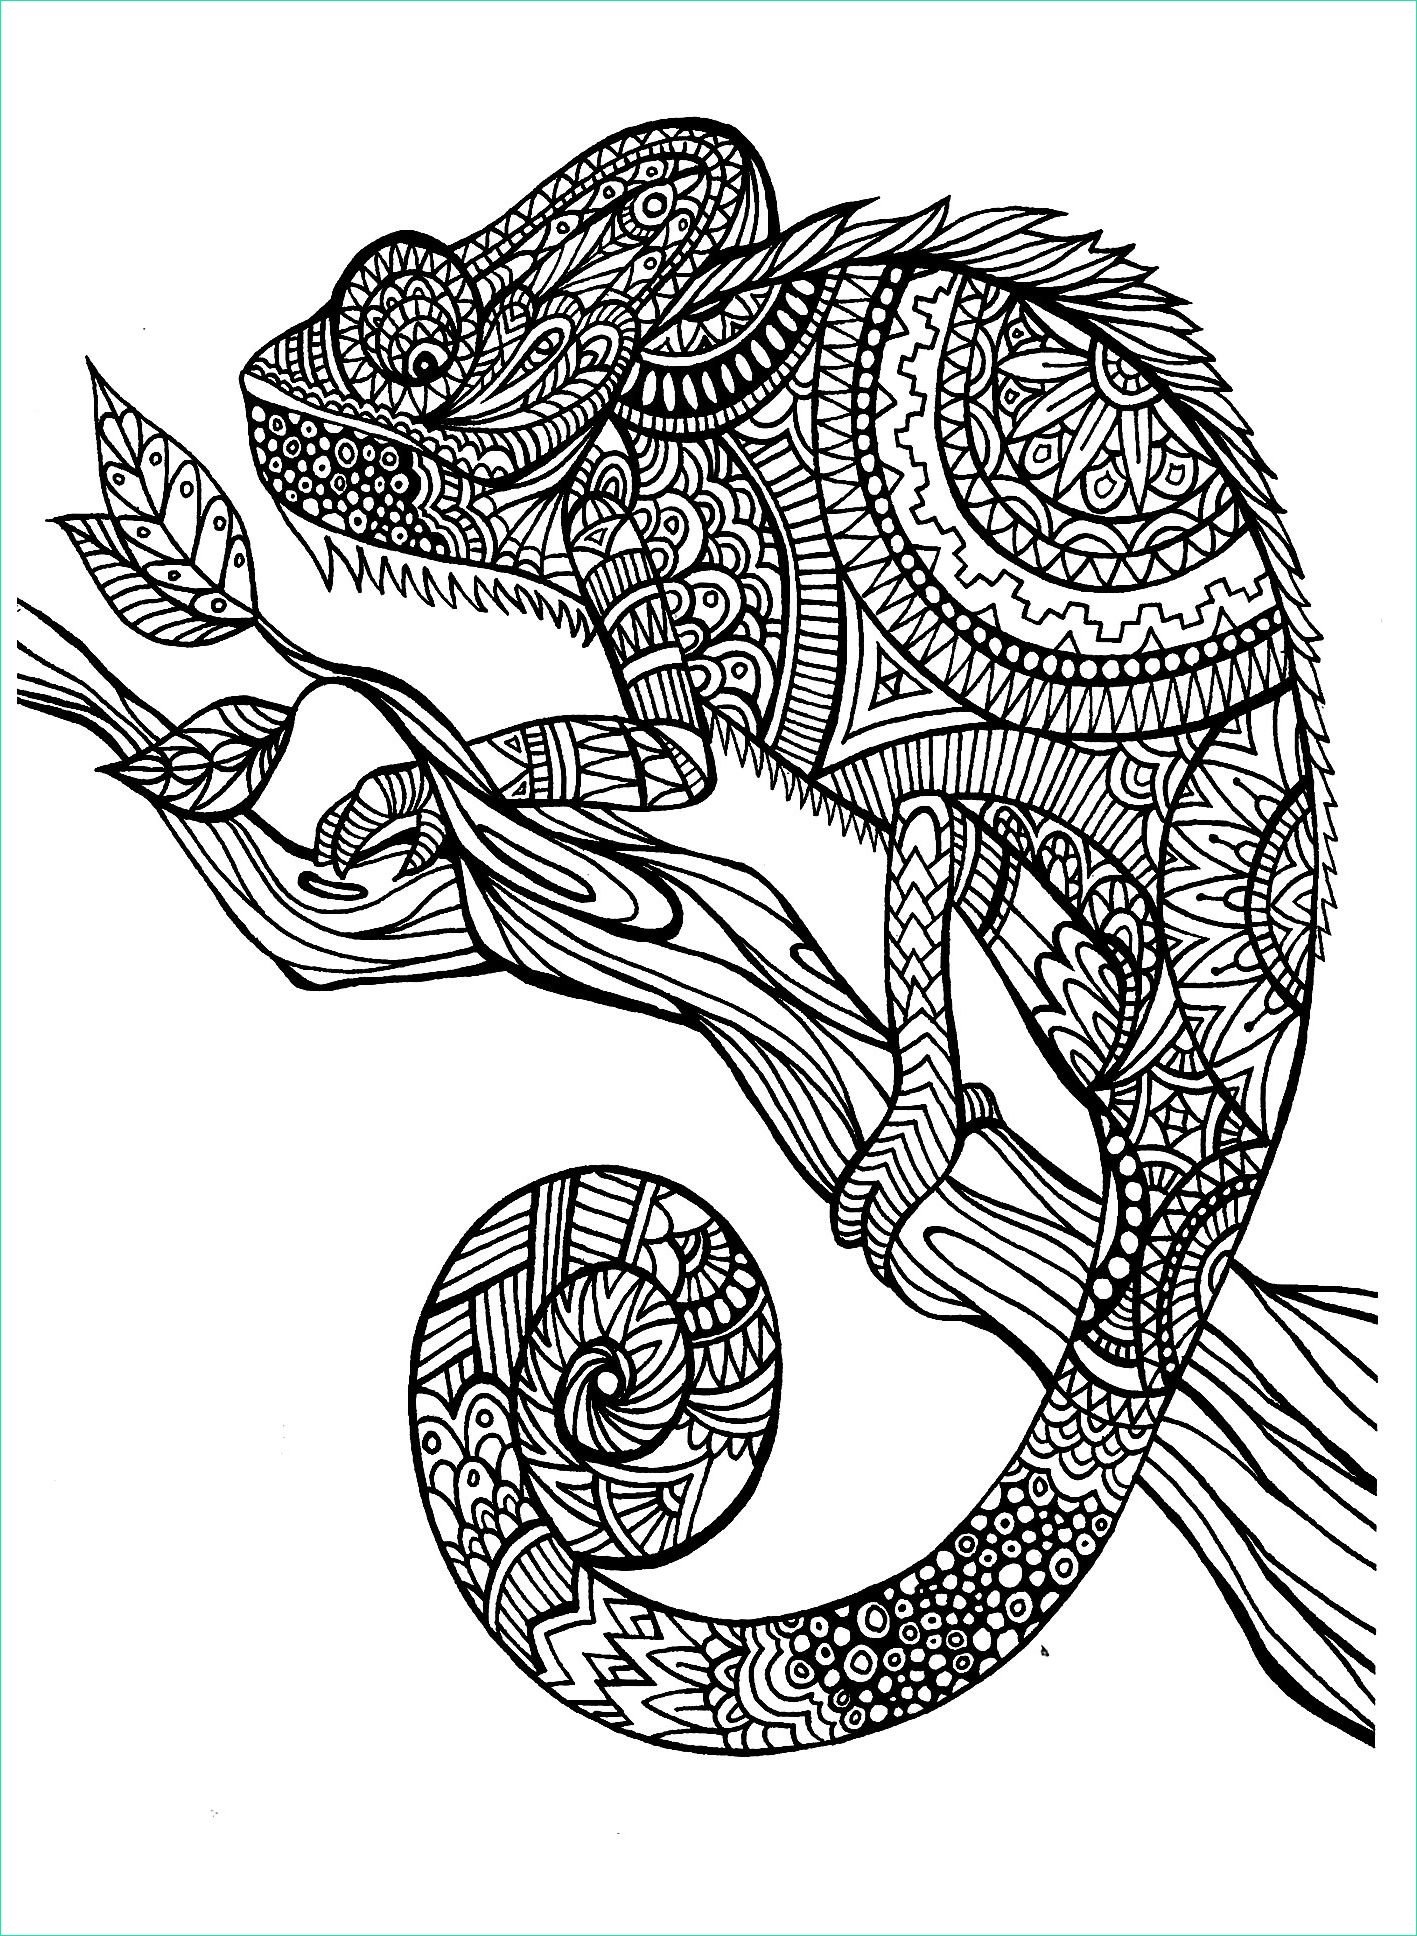 image=chameleons coloring adult cameleon patterns 1